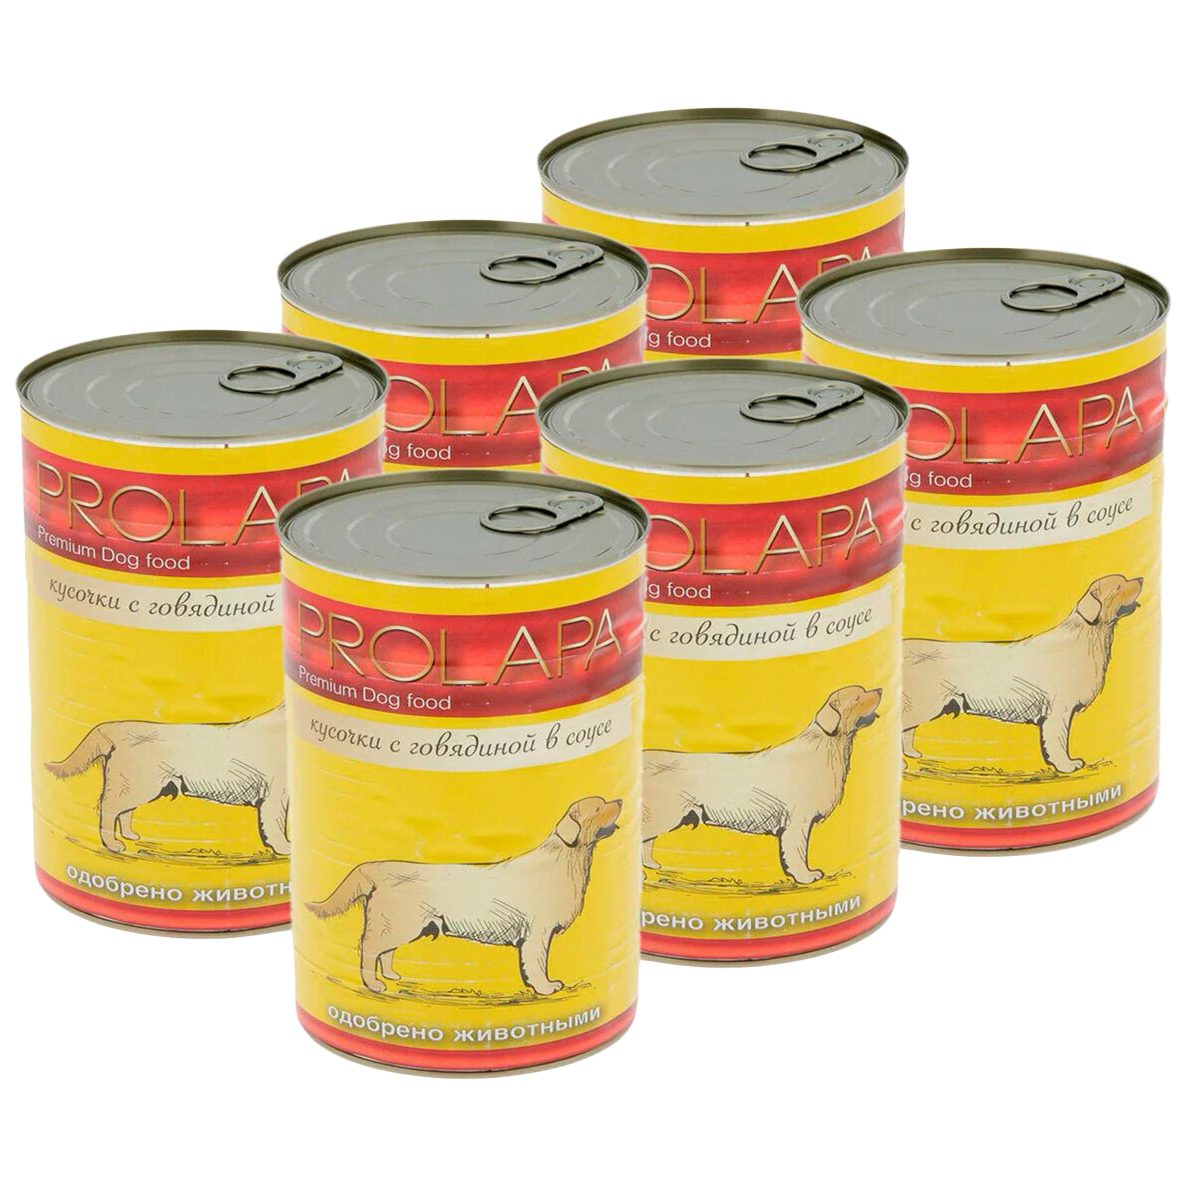 Консервы для собак Prolapa, говядина, 6 шт по 850 г